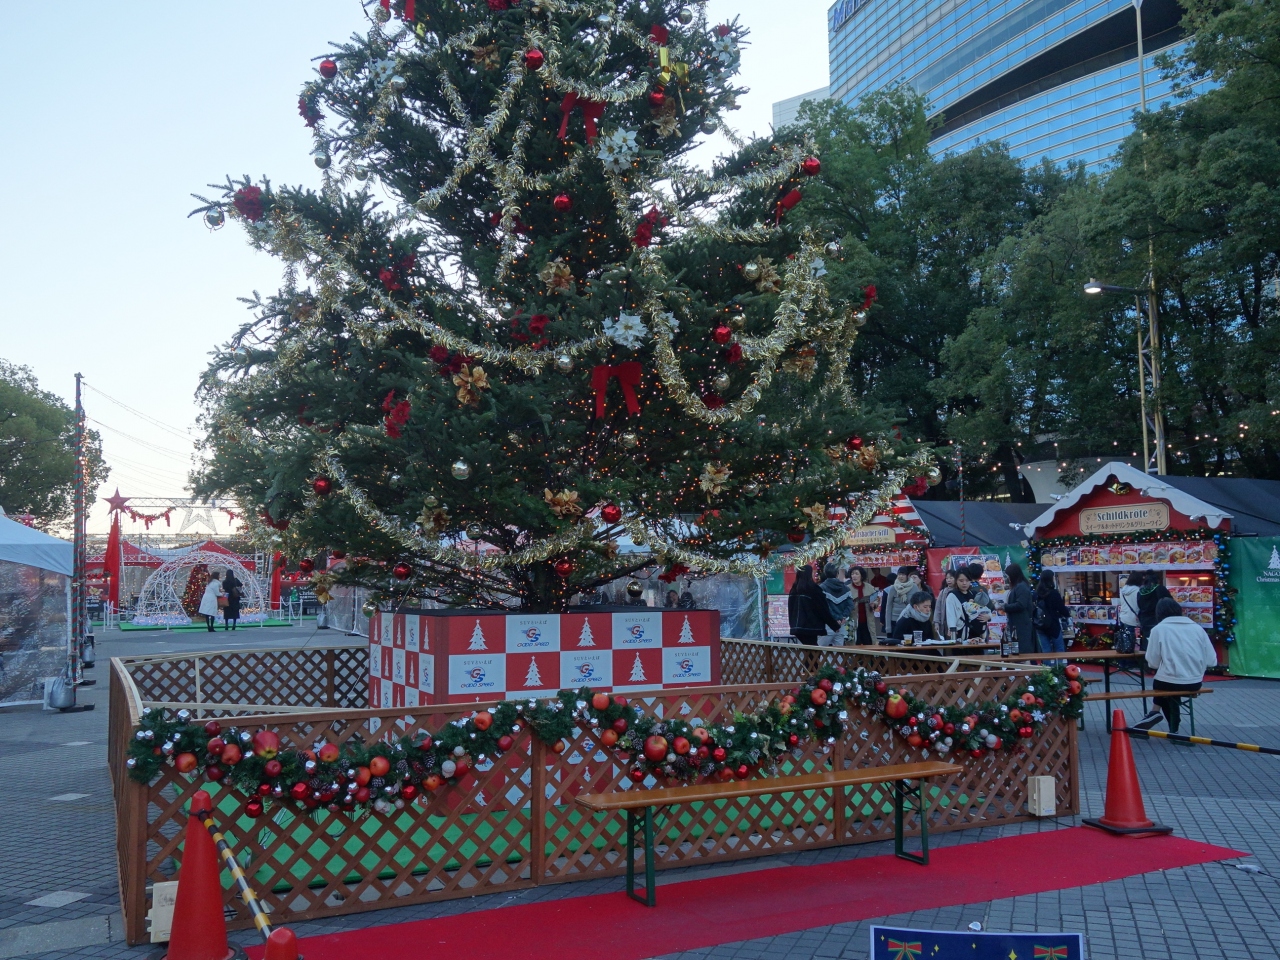 久屋大通公園でやっている 名古屋クリスマスマーケット19 に行ってきました 名古屋 愛知県 の旅行記 ブログ By Nomonomoさん フォートラベル